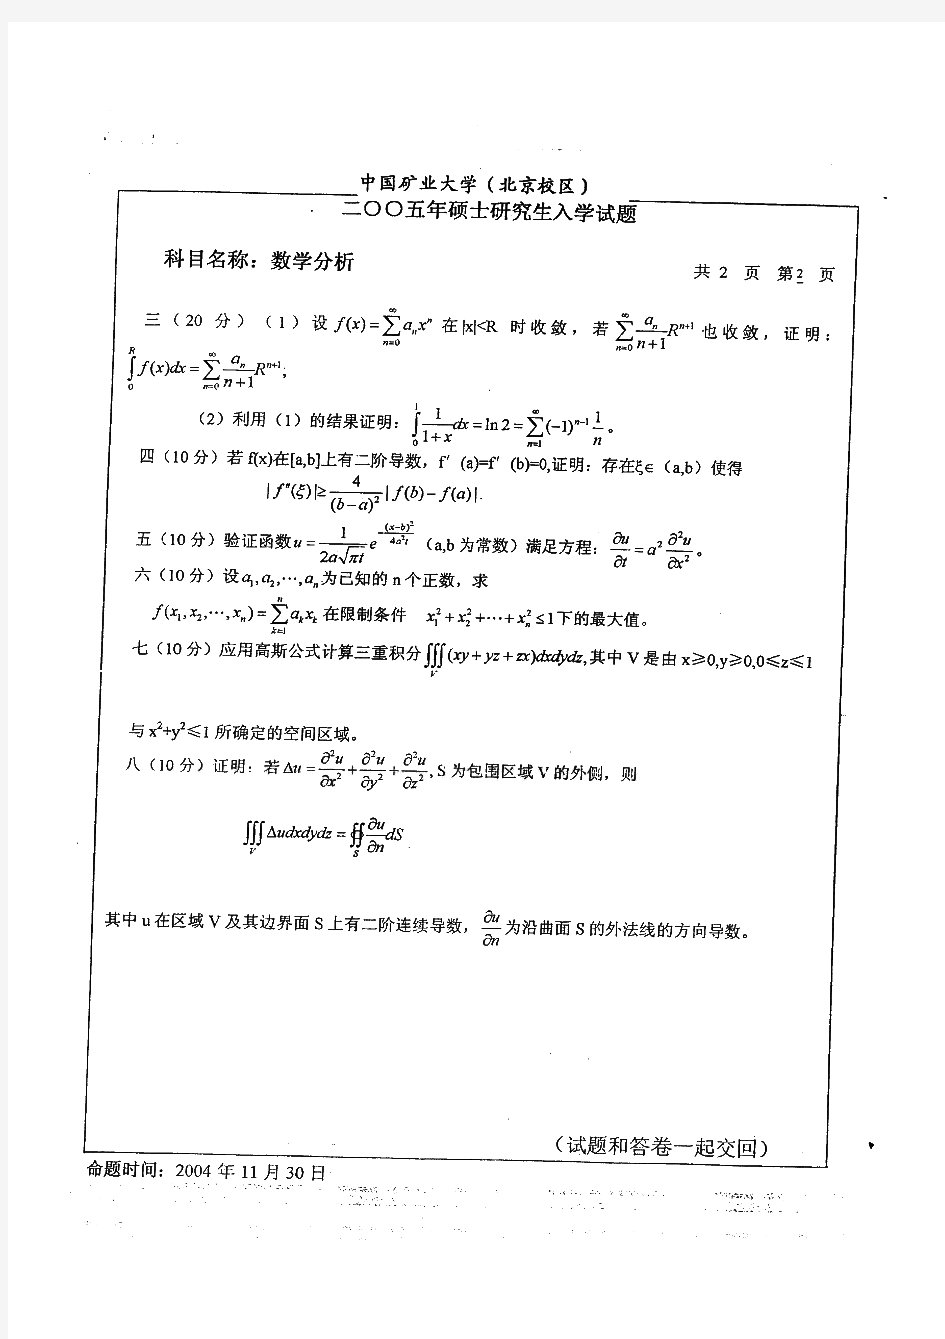 中国矿业大学数学分析历年考研试题